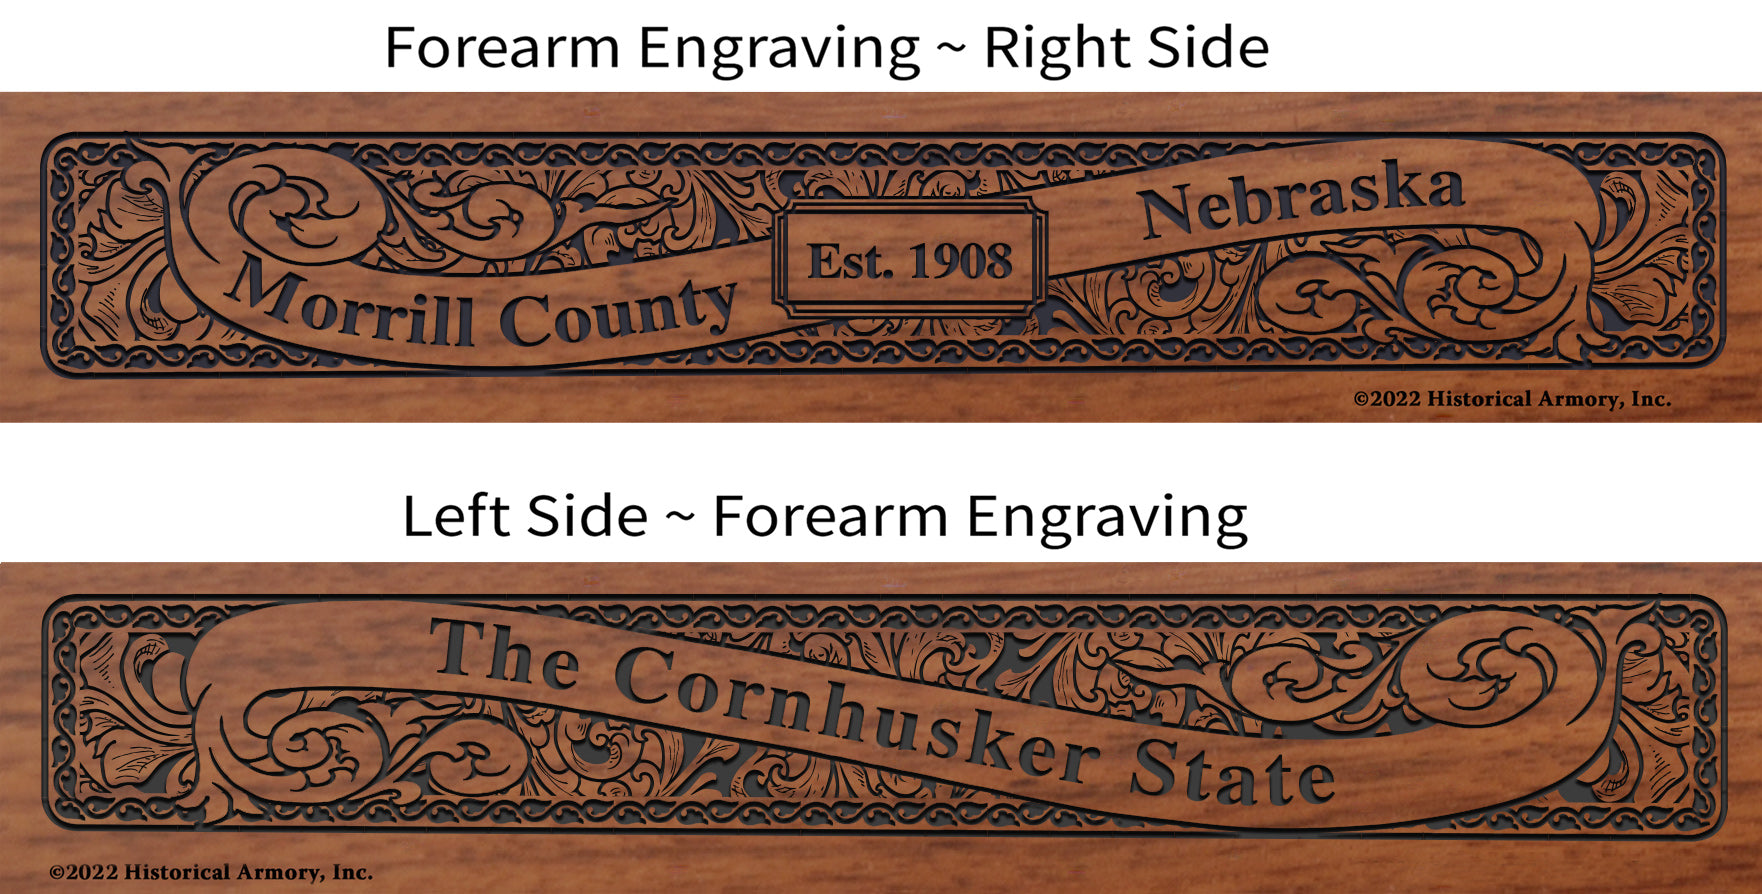 Morrill County Nebraska Engraved Rifle Forearm